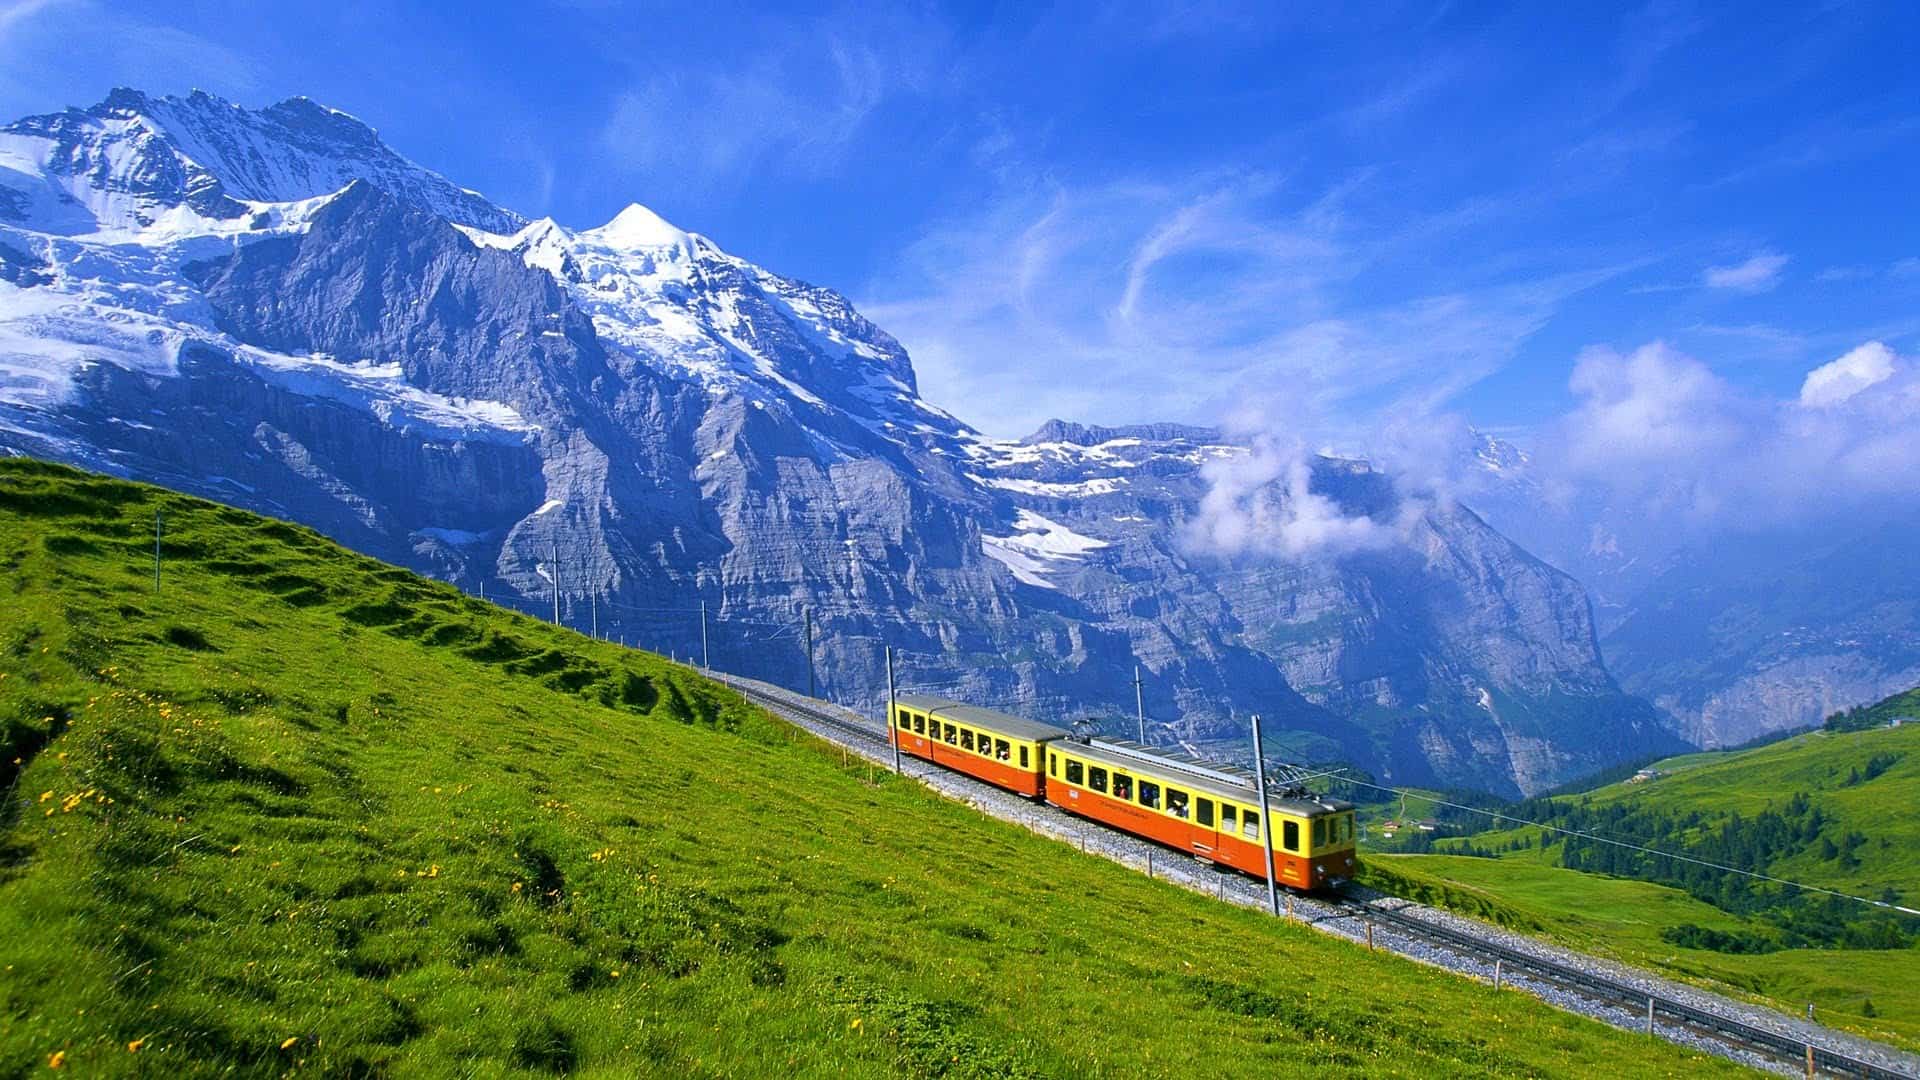 قائمة بافضل الفنادق في مدن سويسرا 2020